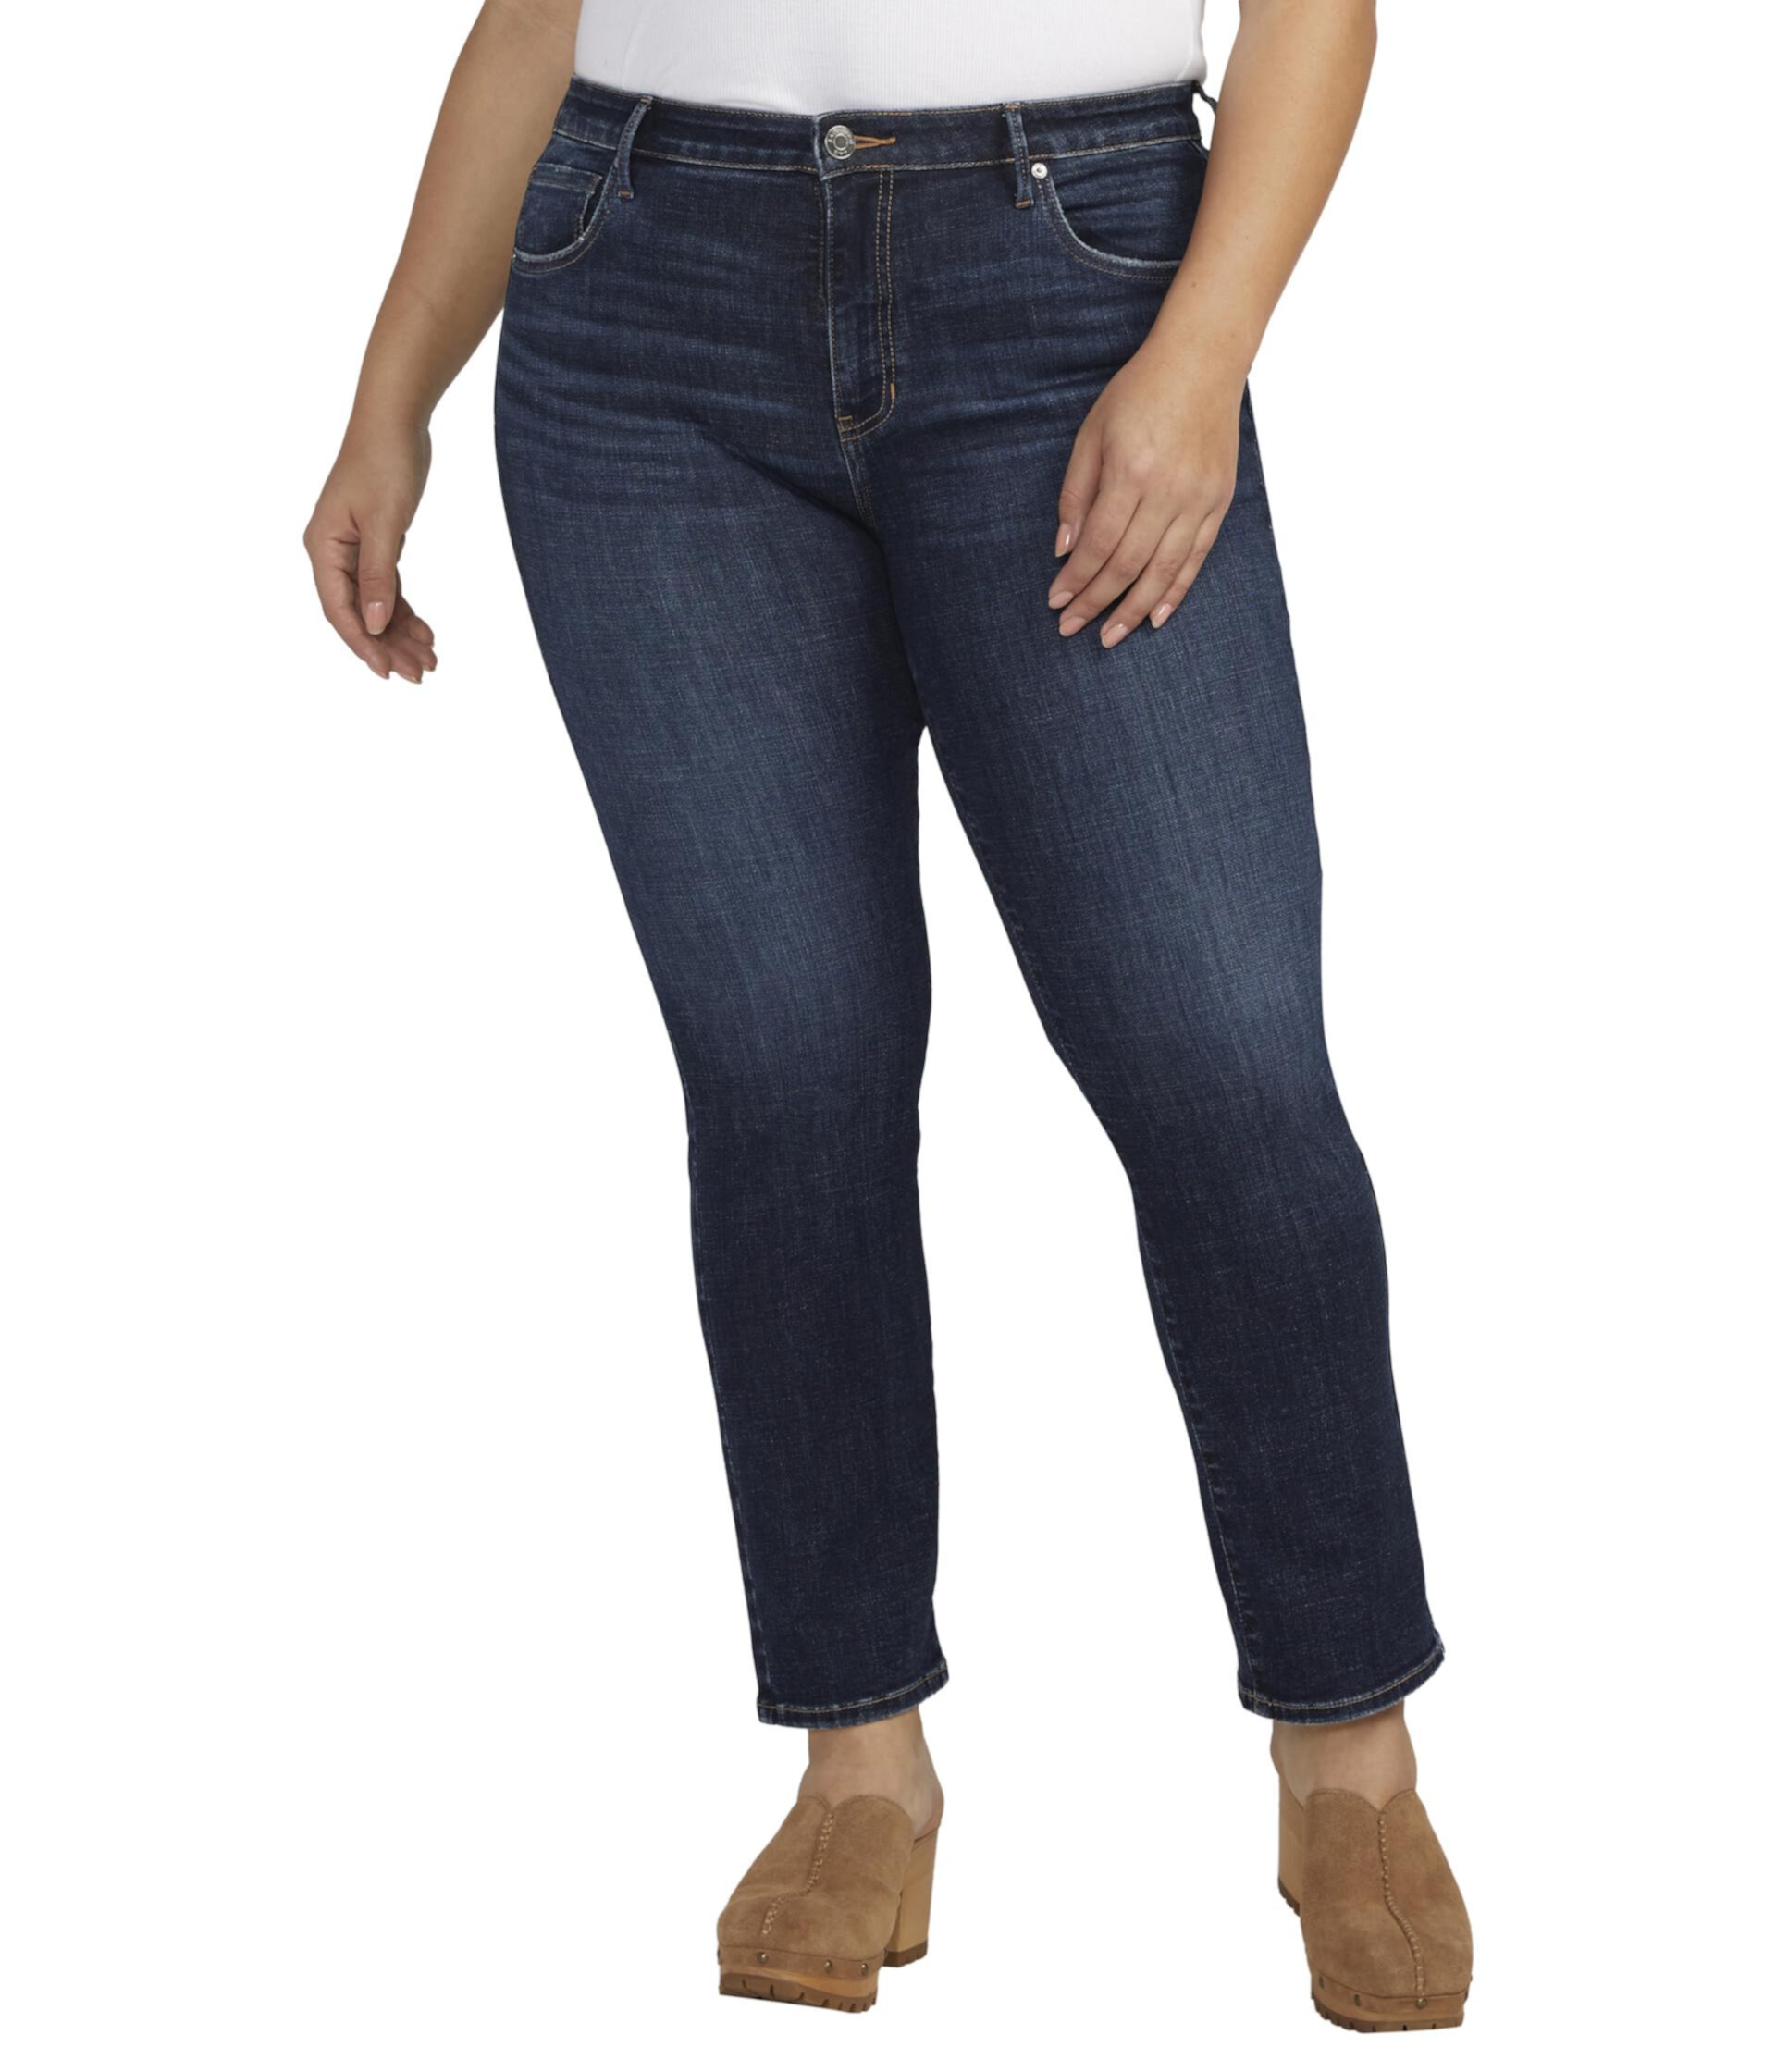 Узкие прямые джинсы Cassie со средней посадкой размера плюс Jag Jeans